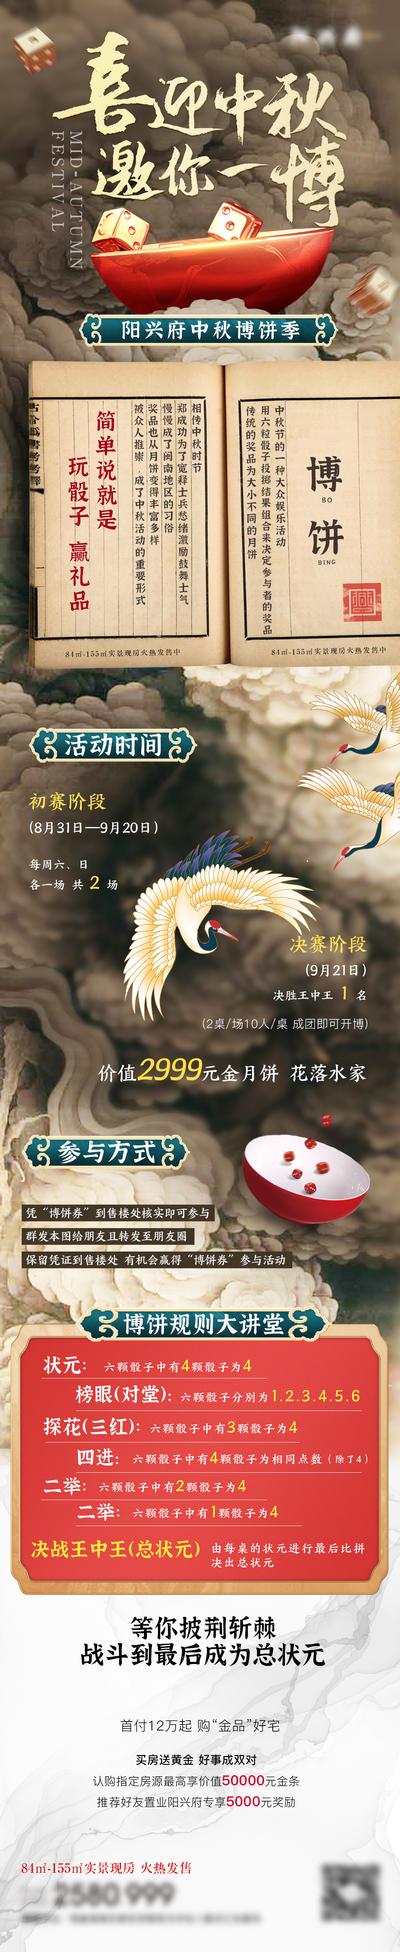 南门网 海报 长图 中国传统节日 中秋节 博饼 习俗 活动